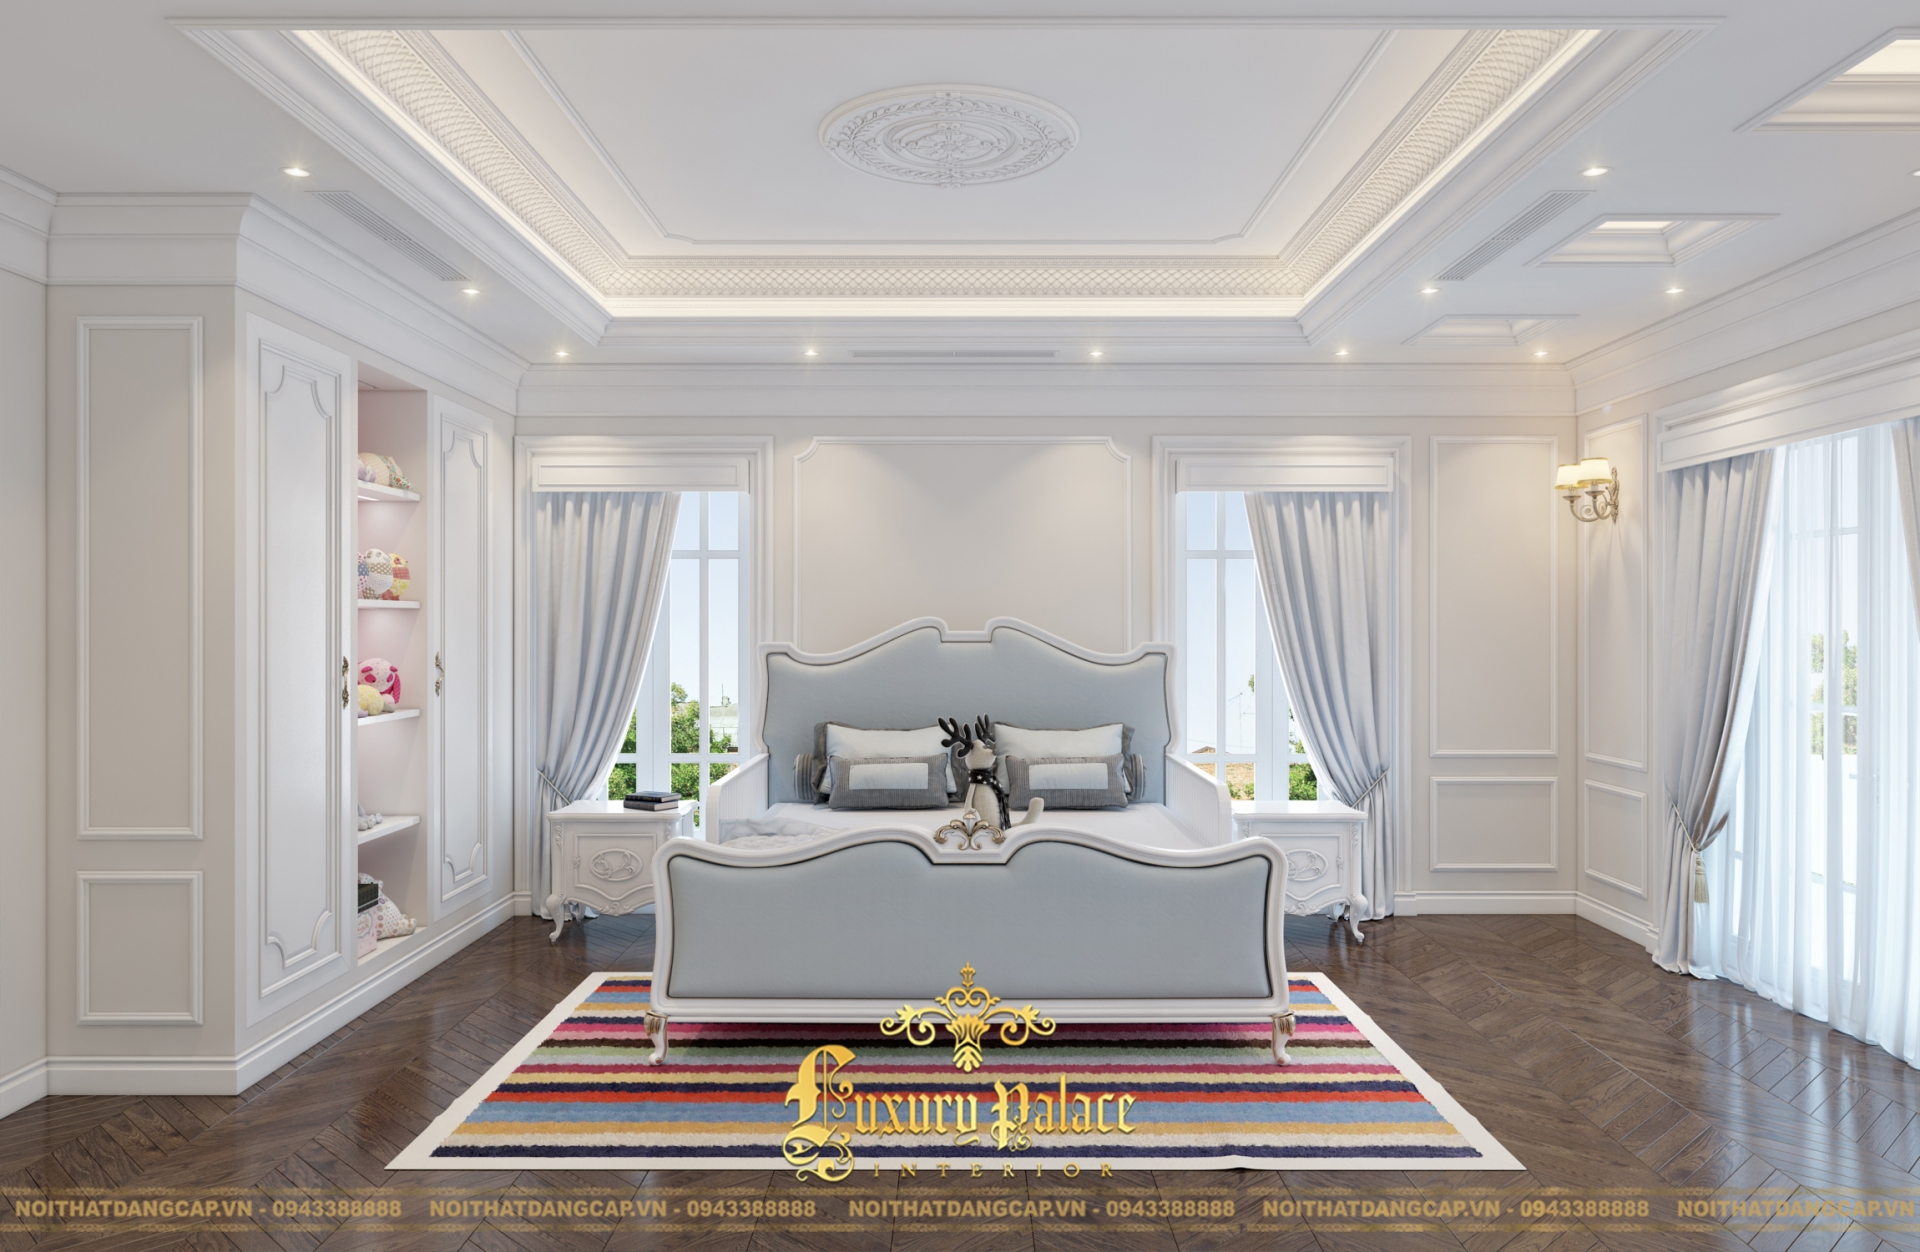 Mẫu thiết kế phòng ngủ phong cách tân cổ điển châu Âu 2